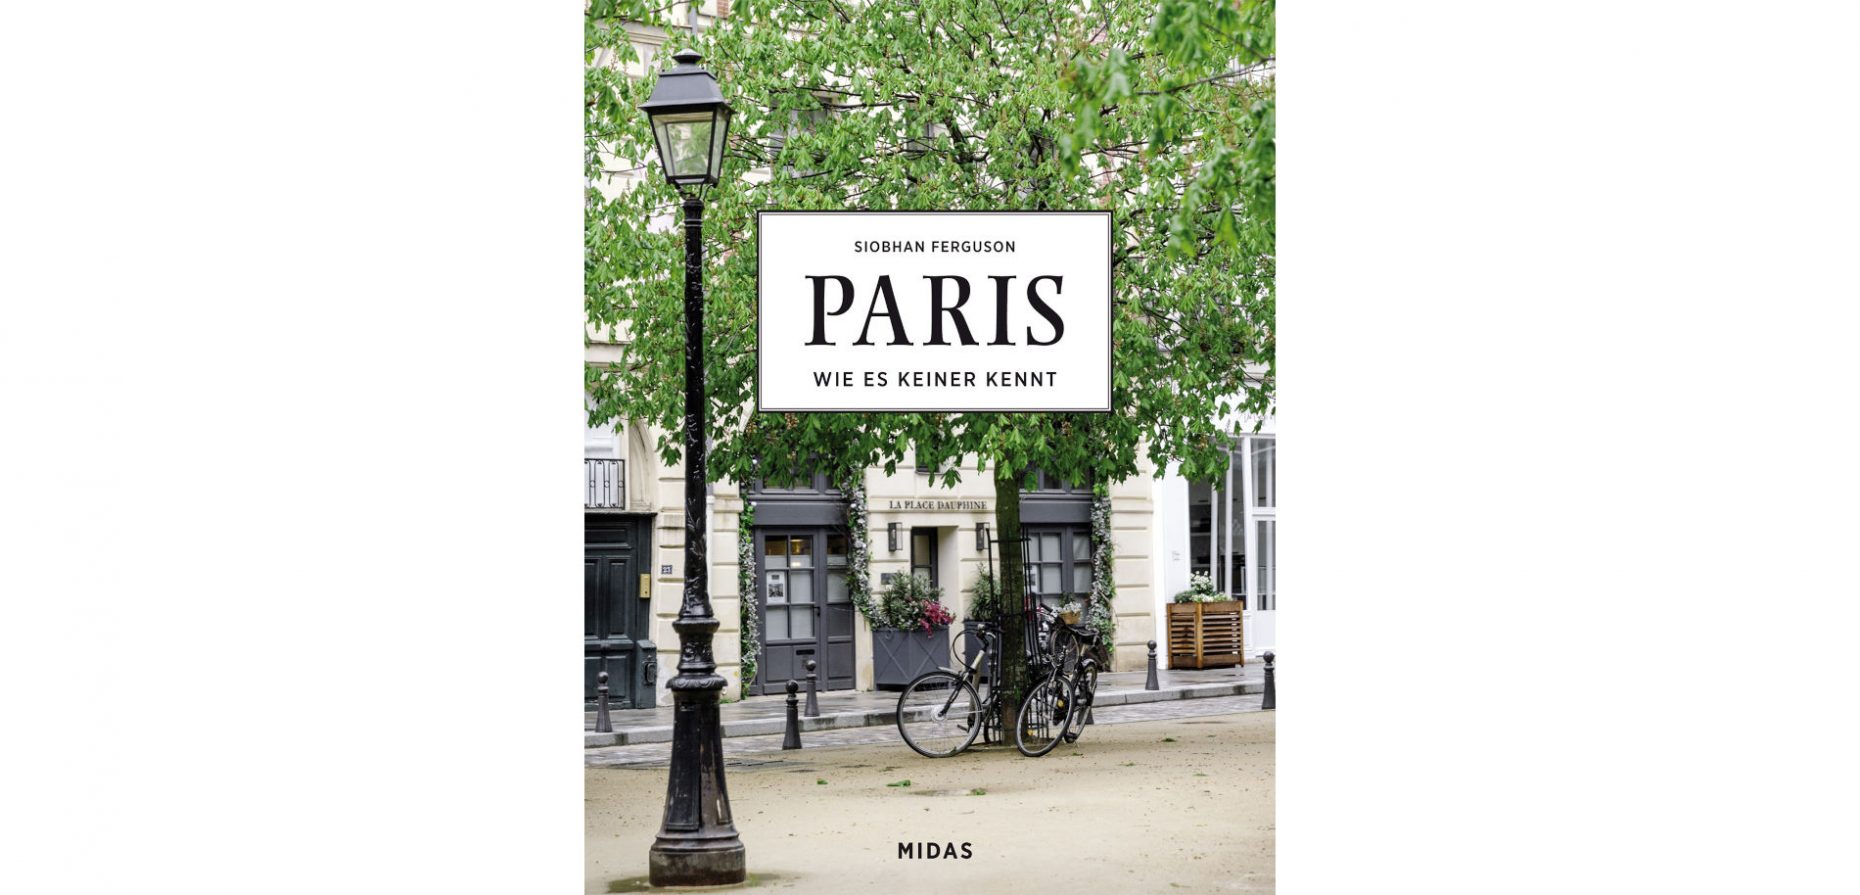 In ihrem bei Midas erschienenen Buch Paris – Wie es keiner kennt präsentiert die Fotografin Siobhan Ferguson zauberhafte Orte jenseits der ausgetretenen Instagram-Pfade. Das Bild zeigt das Buchcover. © Midas Verlag AG